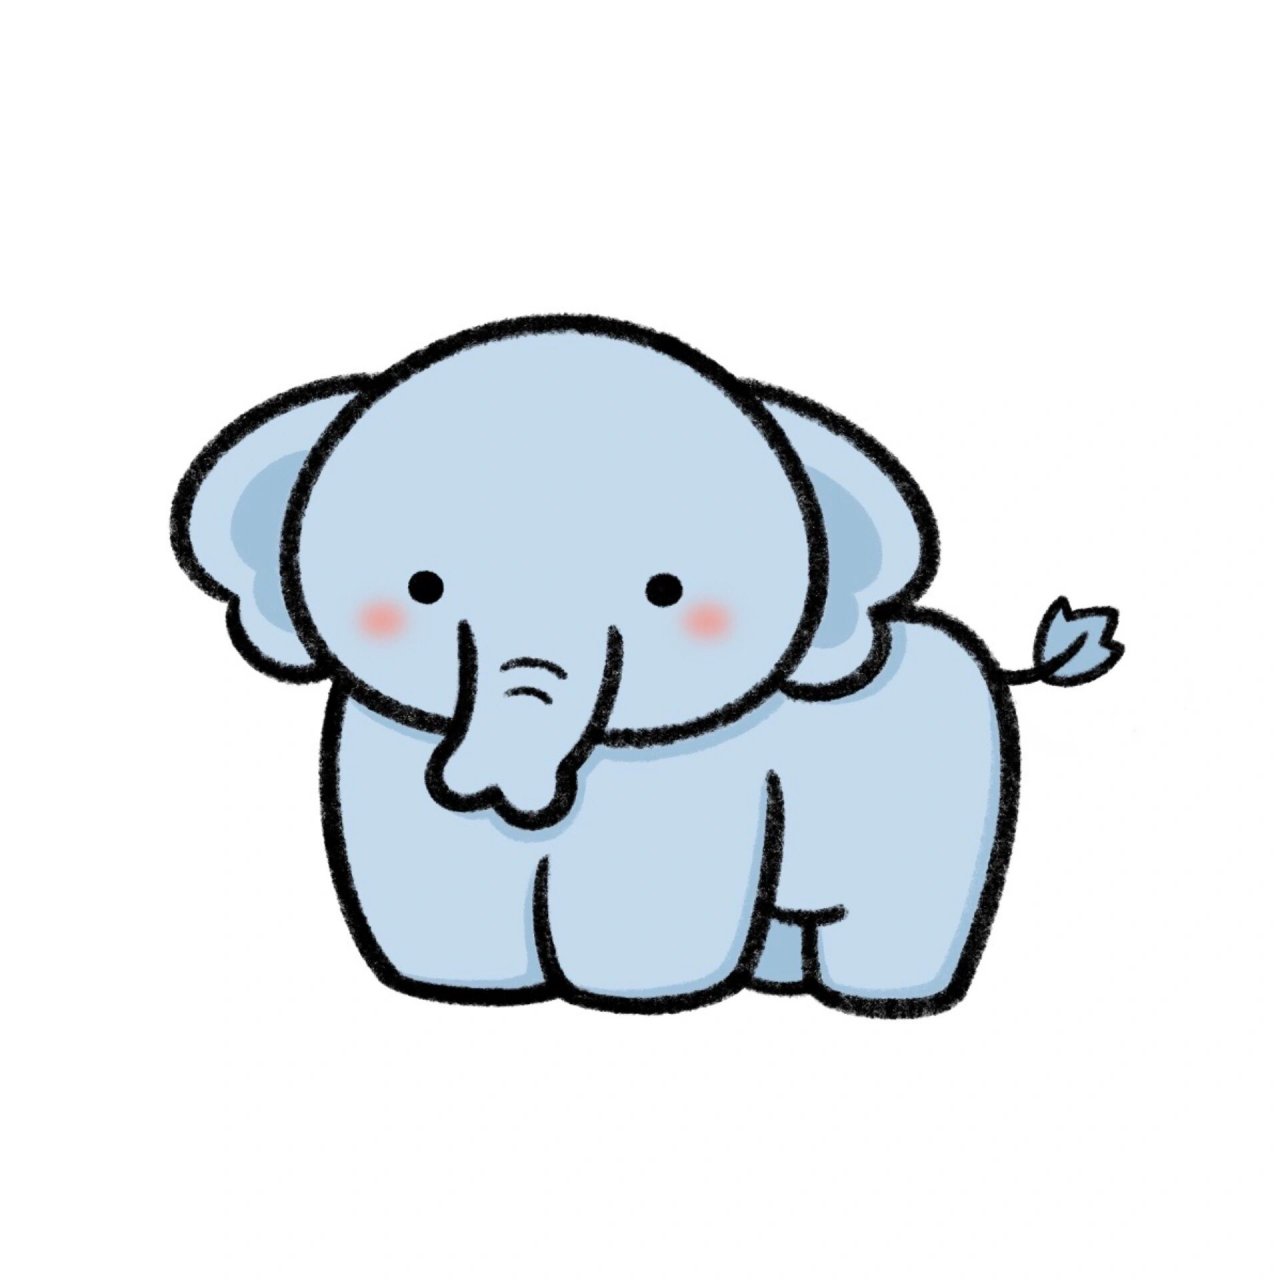 手残党学简笔画附教程7315小象简单画法 今天来画一个小象哟,很